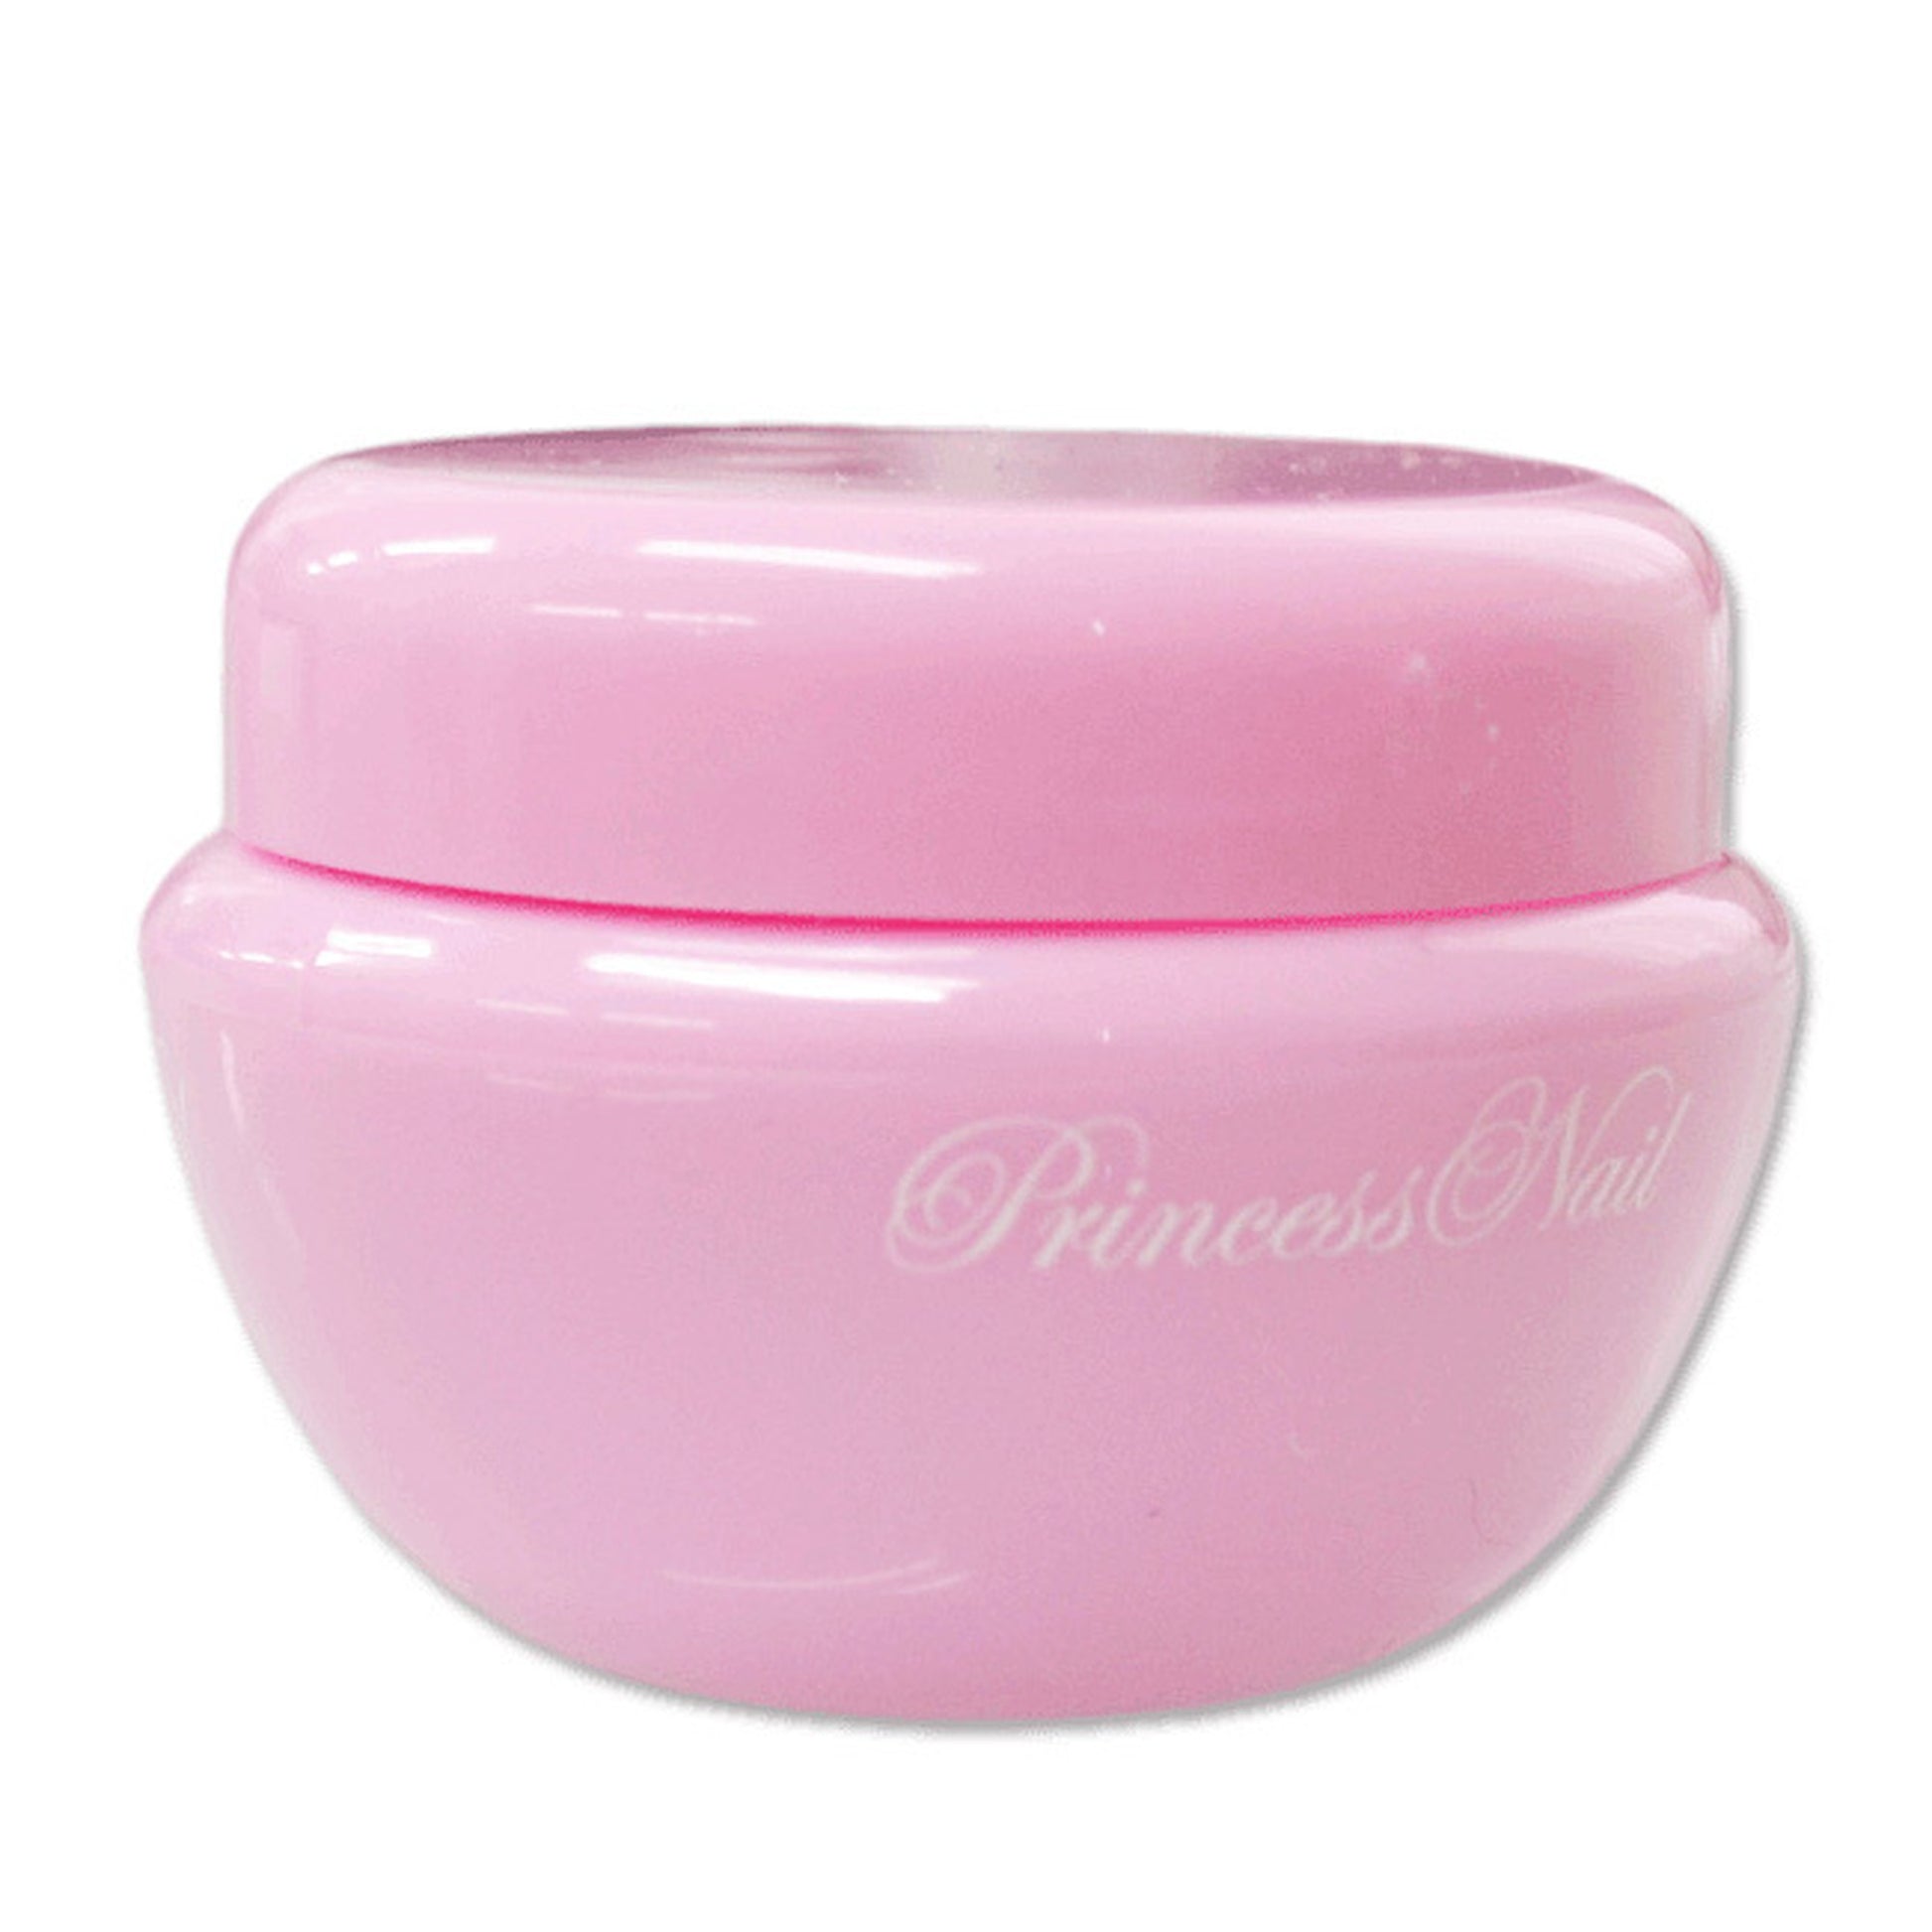 内蓋つきダッペンディッシュ ピンク色の可愛いコンテナ 3個set – Princess nail Online